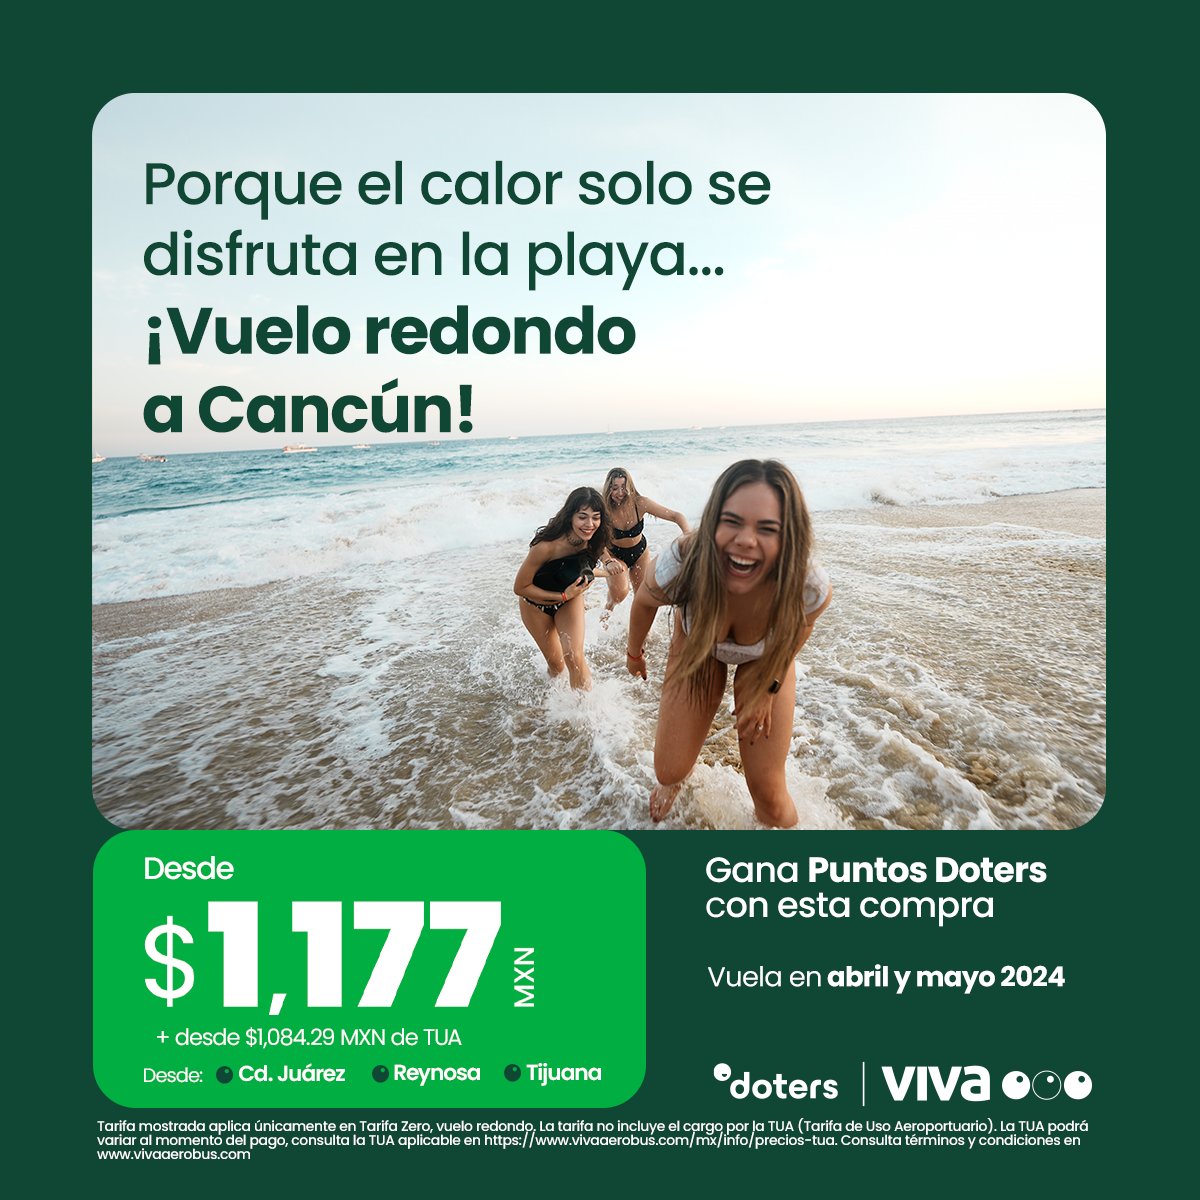 ¡En el mar la vida es más sabrosa! 🌊🏖️☀️ Vuela a Cancún en abril y mayo saliendo desde Cd Juarez, Reynosa o Tijuana desde $1,117 MXN + $1,084.29 MXN de TUA. ✈️🧳 ¡Reserva ahora! bit.ly/4aYhaXA